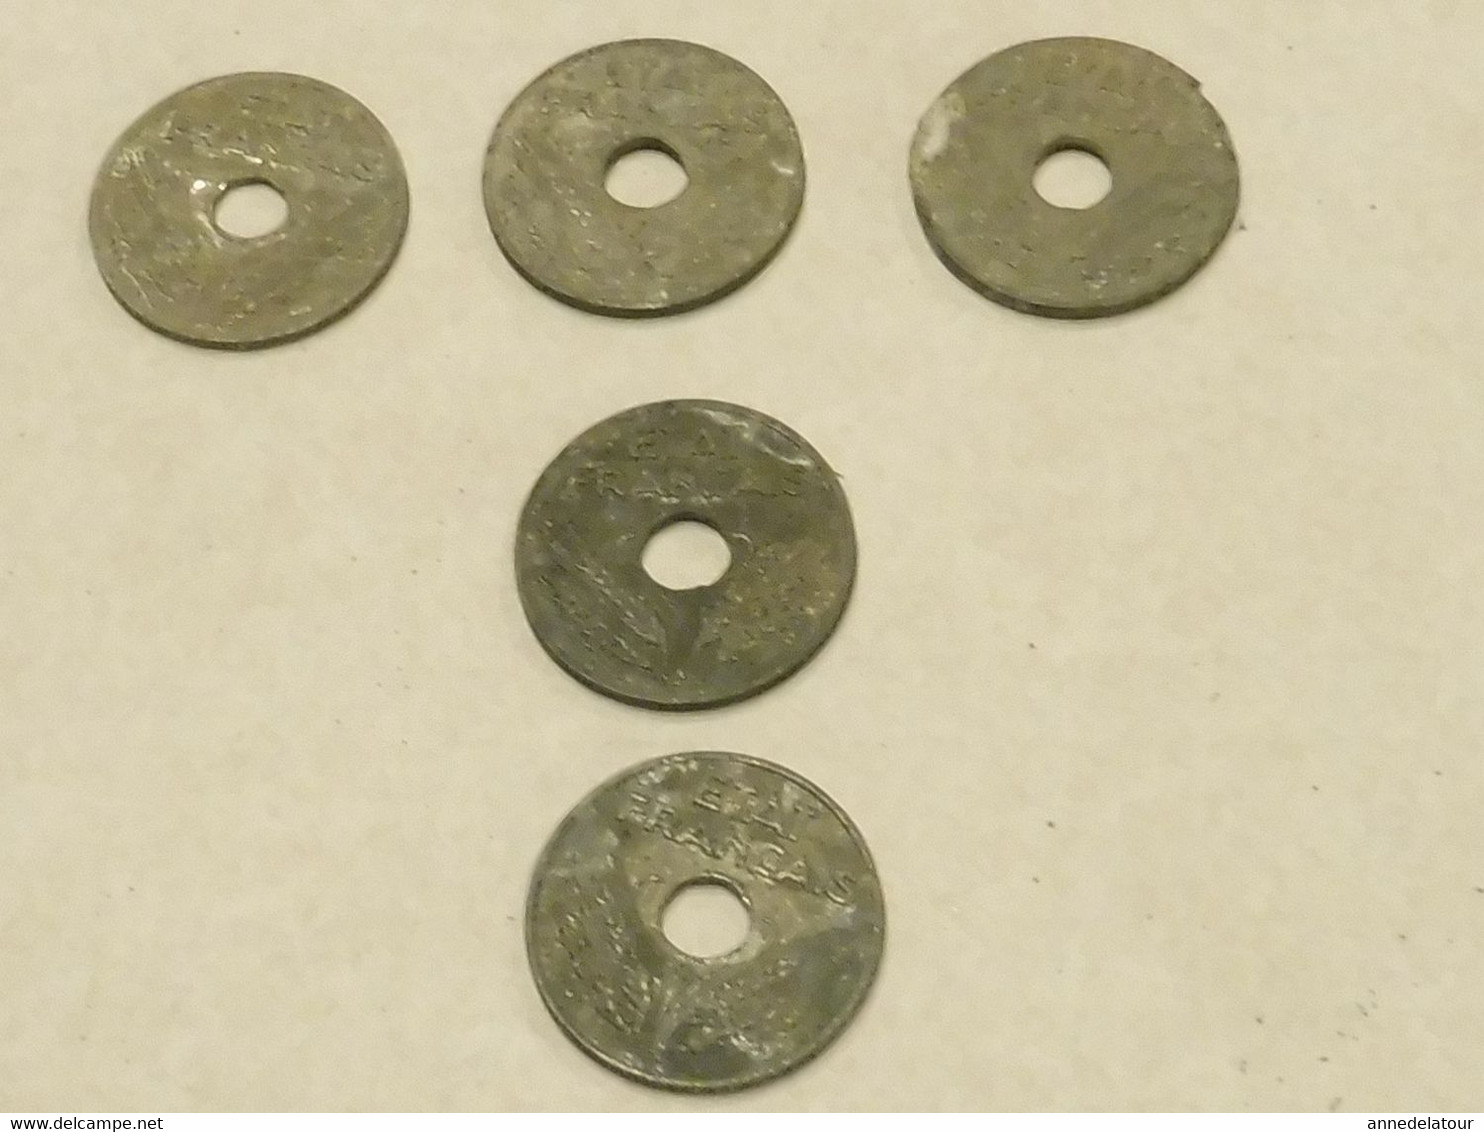 Années (1941- 1942) Lot de 5 pièces  20 Centimes  (Etat Français ) en zinc ou alliage